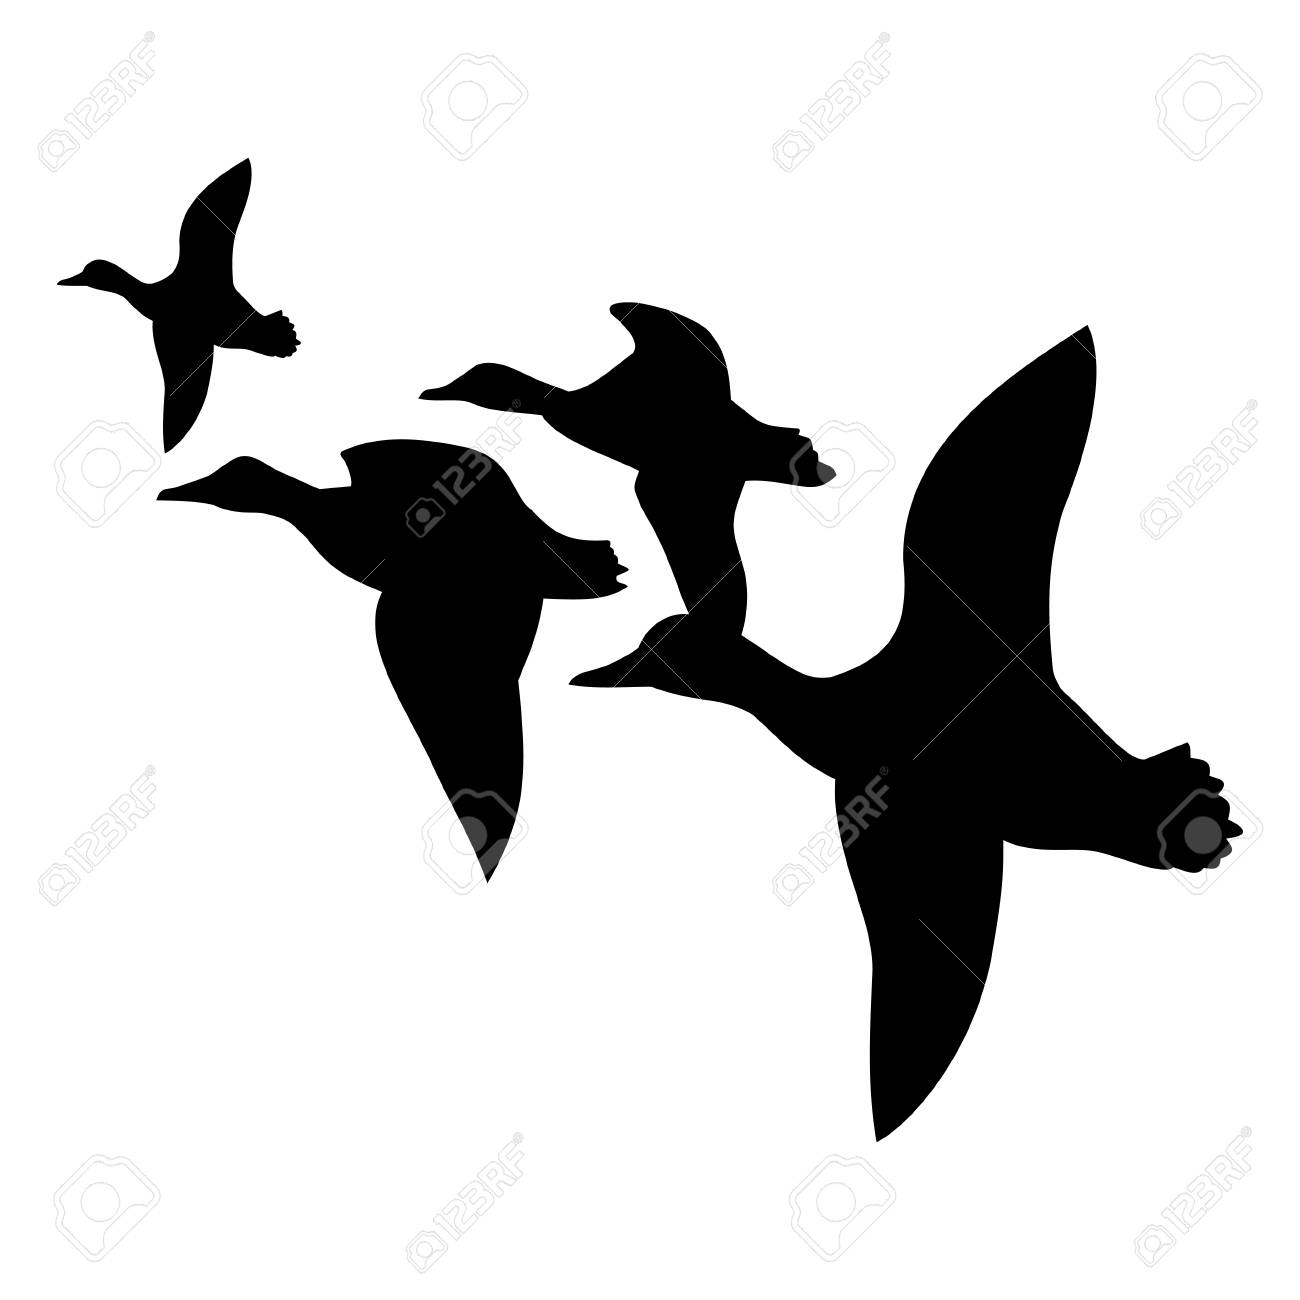 ducks fly South,vector illustration.